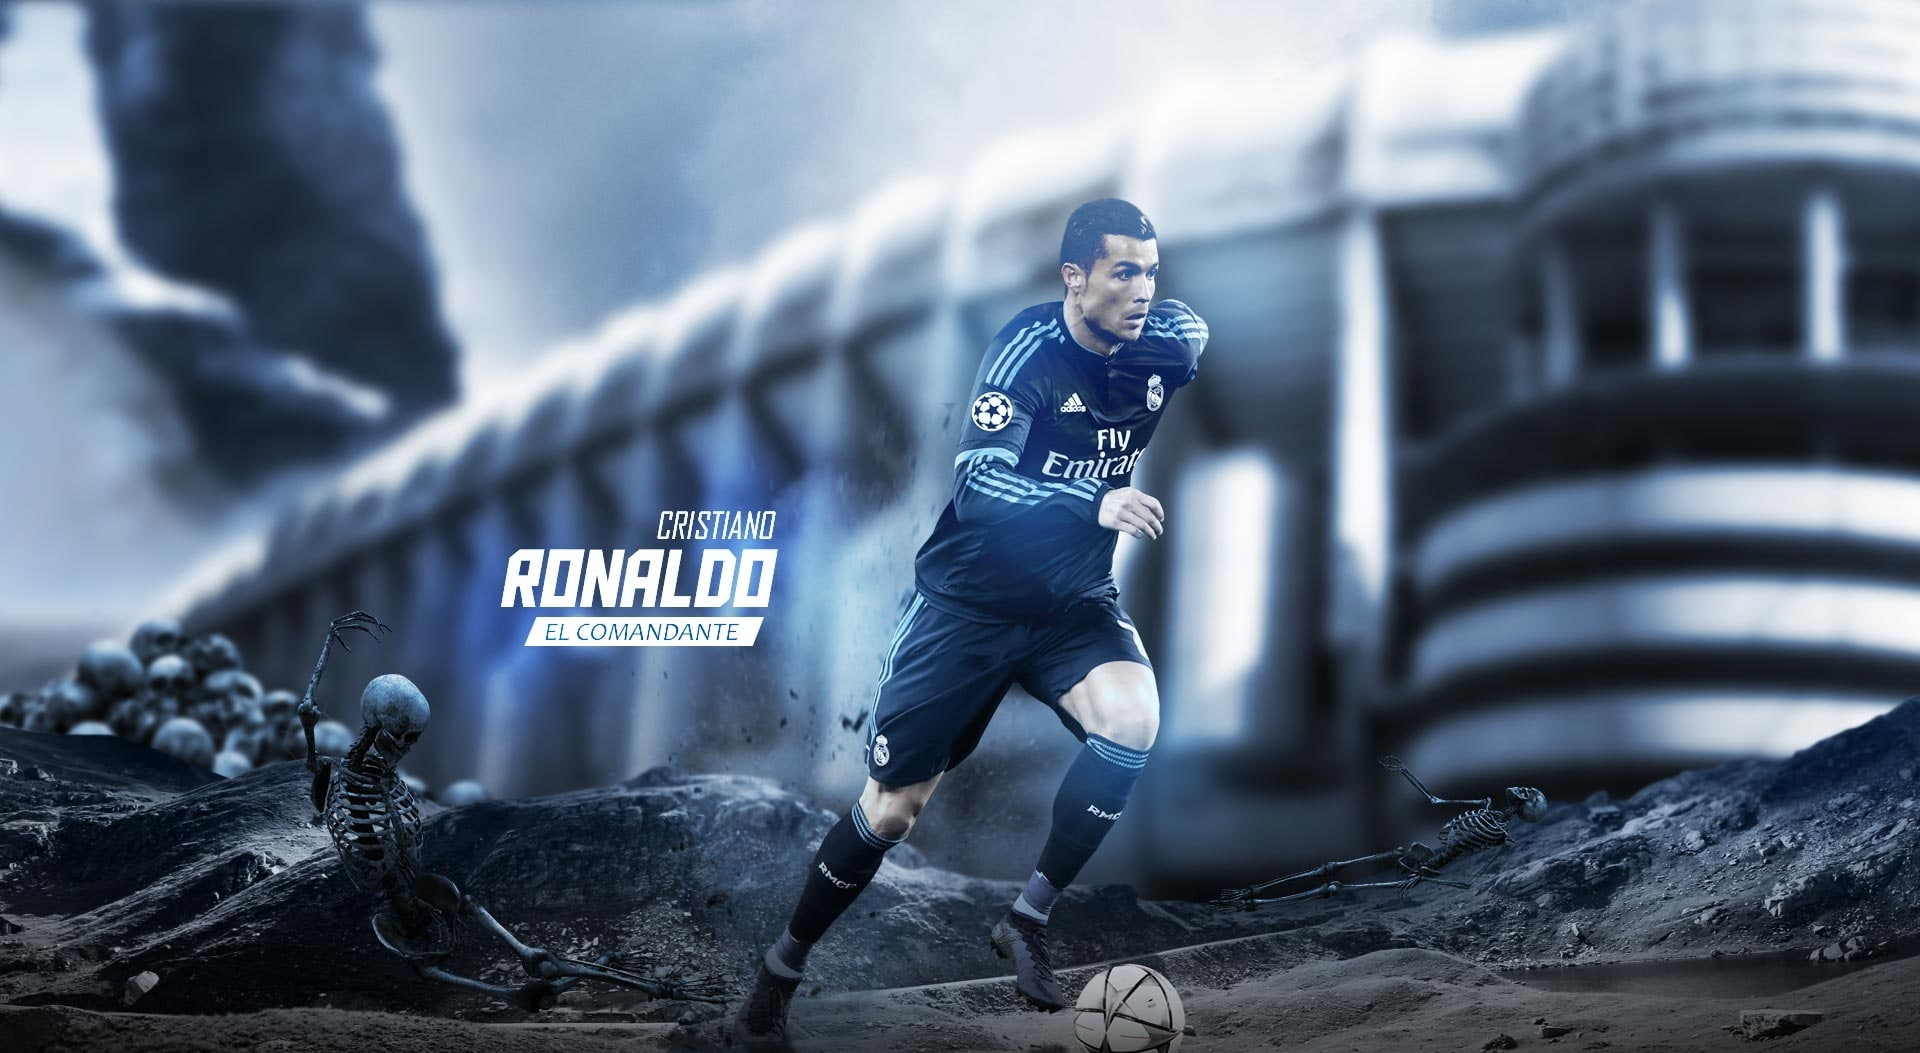 Cristiano Ronaldo - El Comandante, Cristiano Ronaldo digital wallpaper